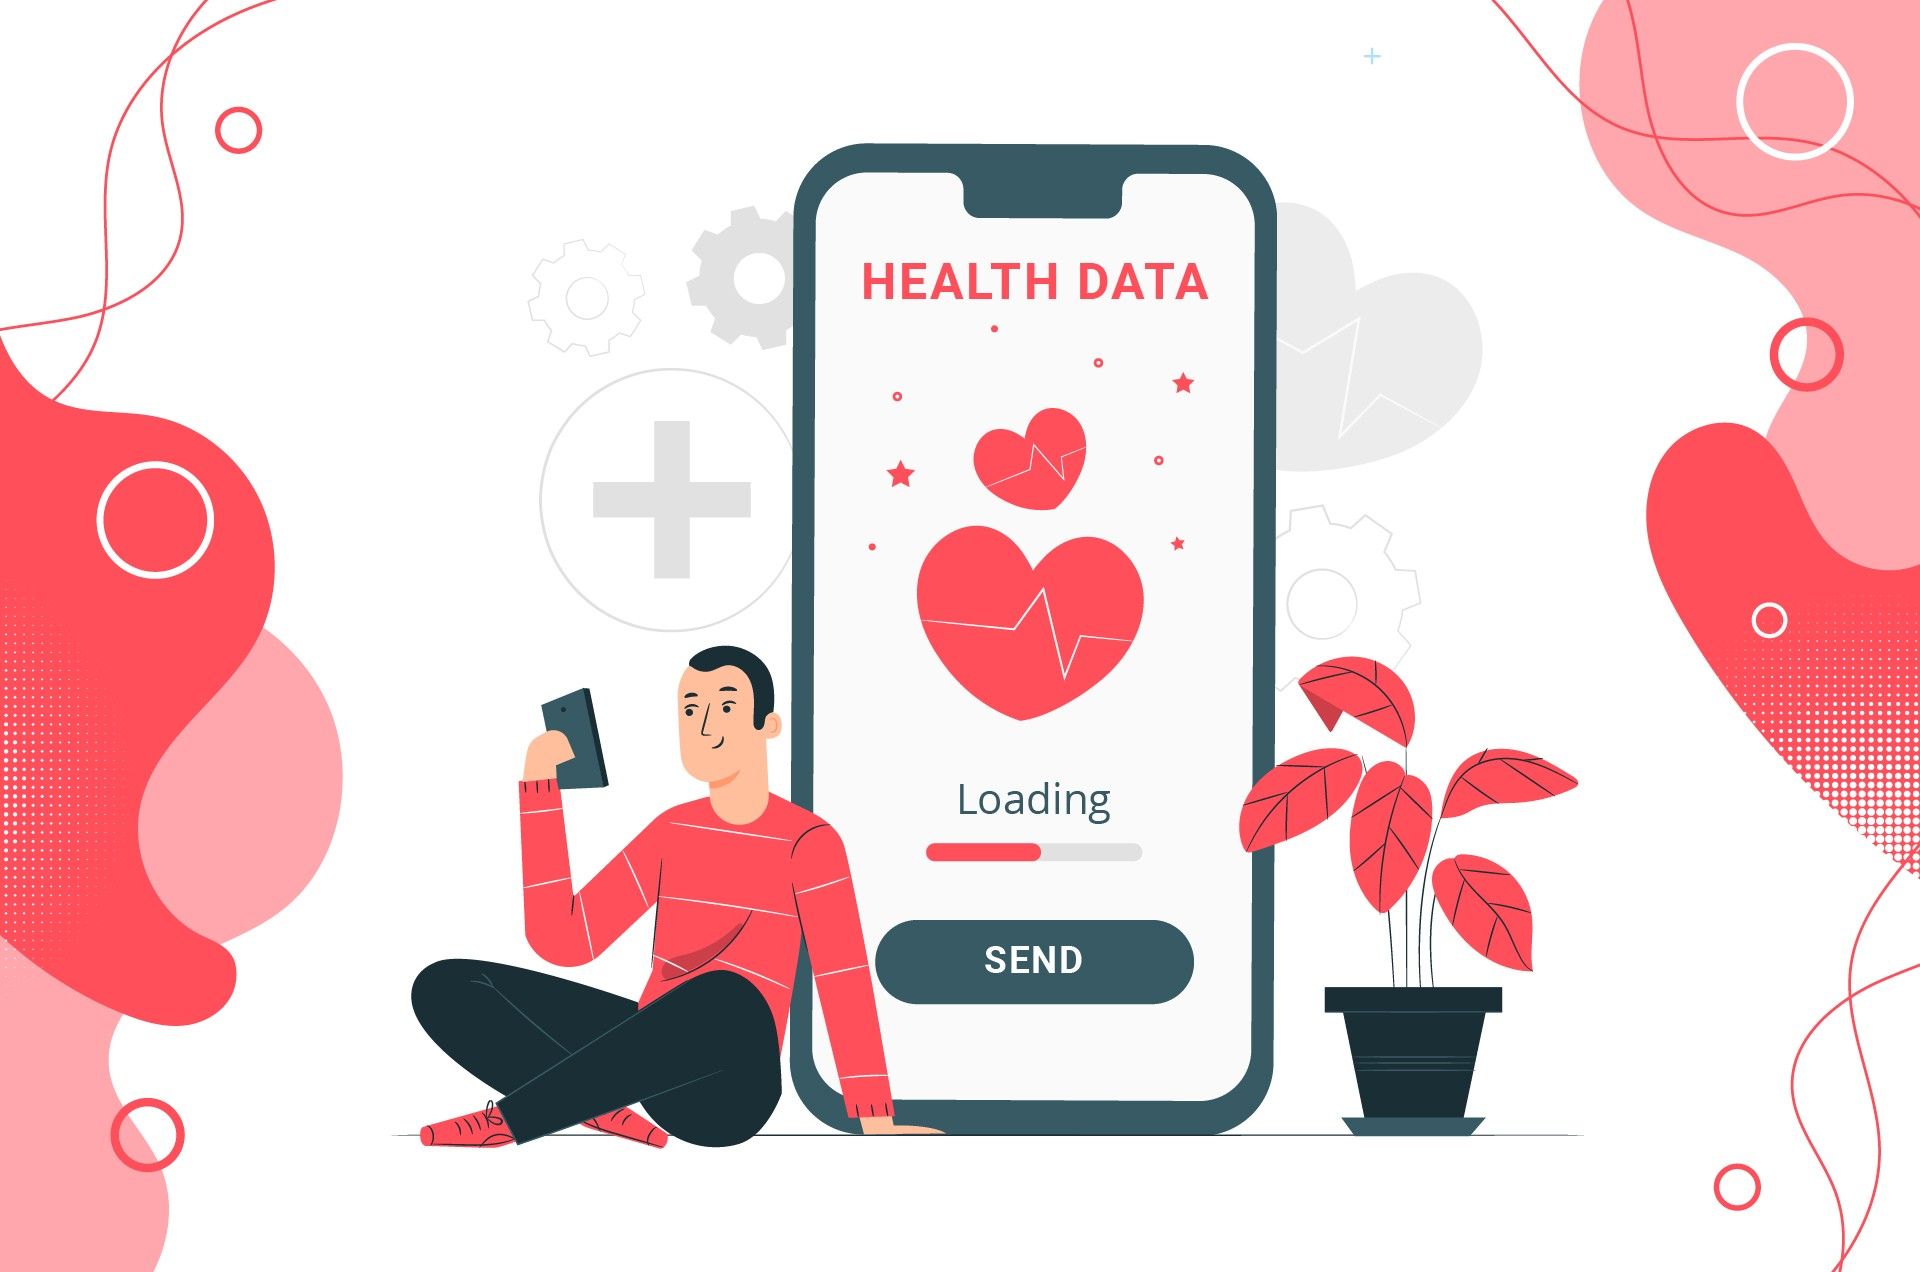 a patient sends health data via mobile